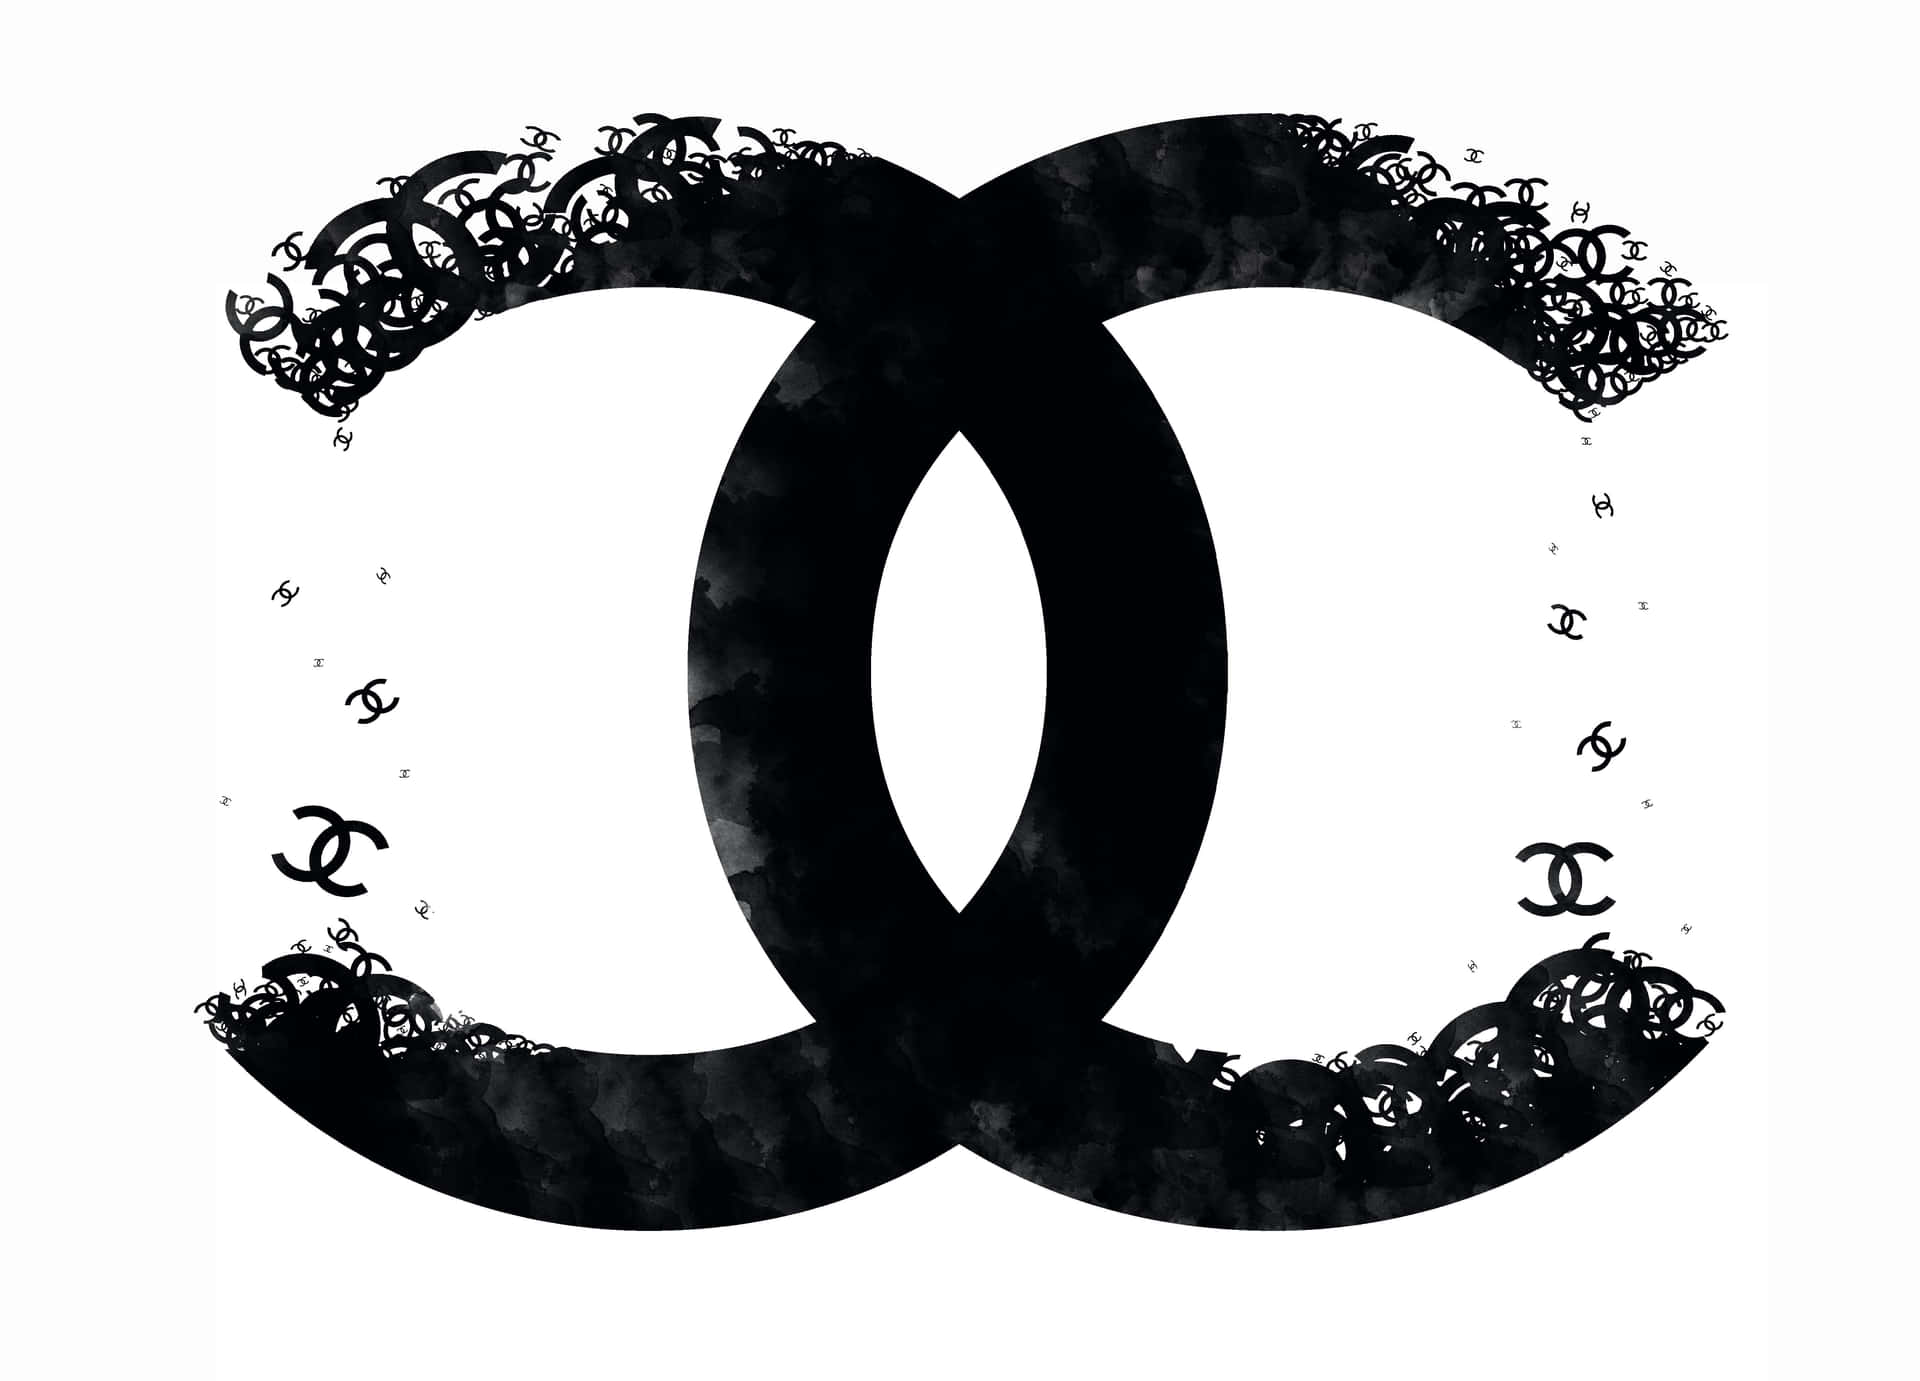 Dasklassische Und Zeitlose Logo Von Chanel.